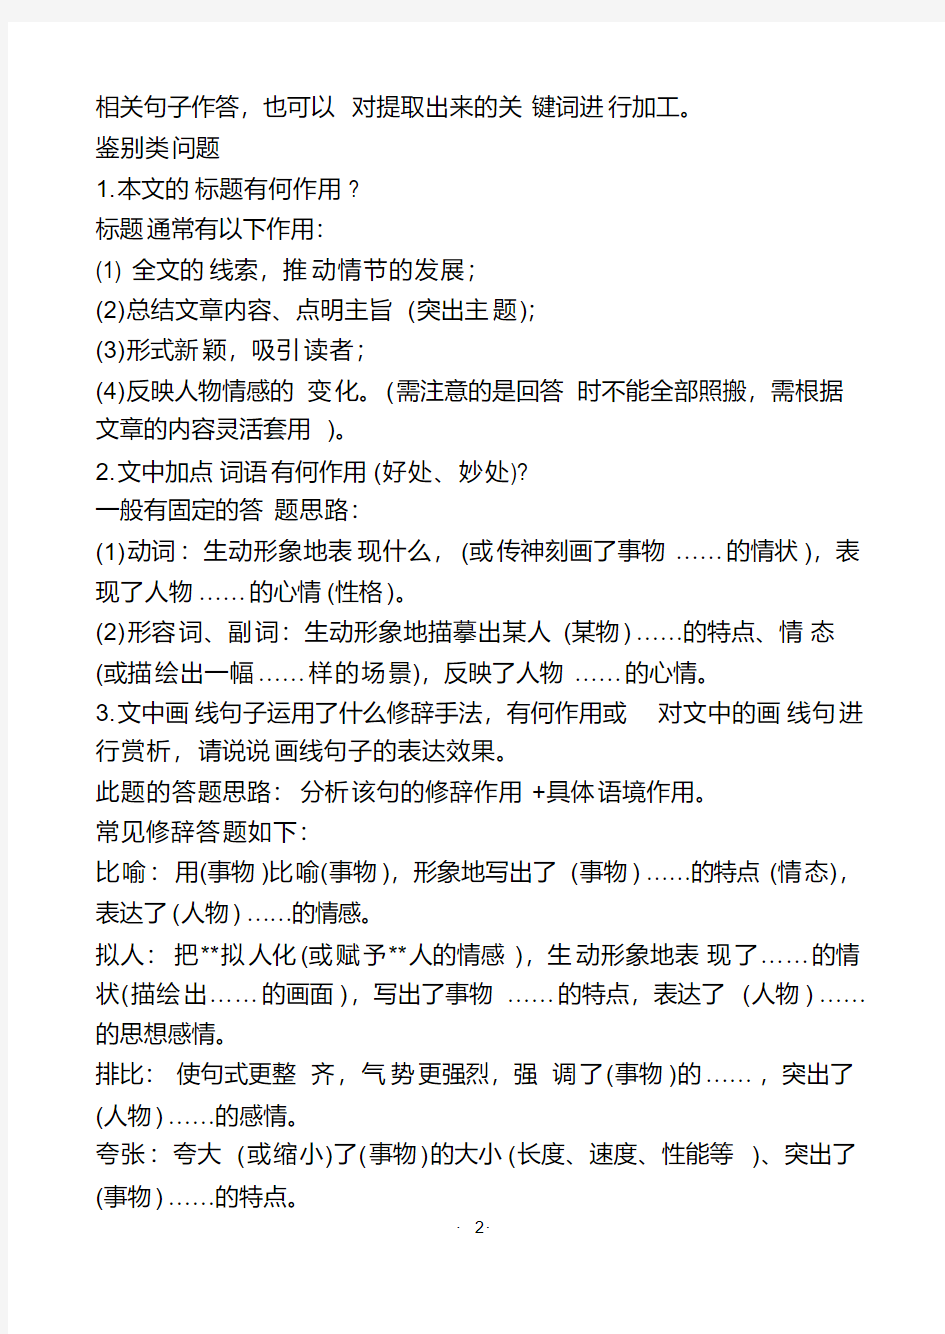 初中语文现代文阅读的15个常考题